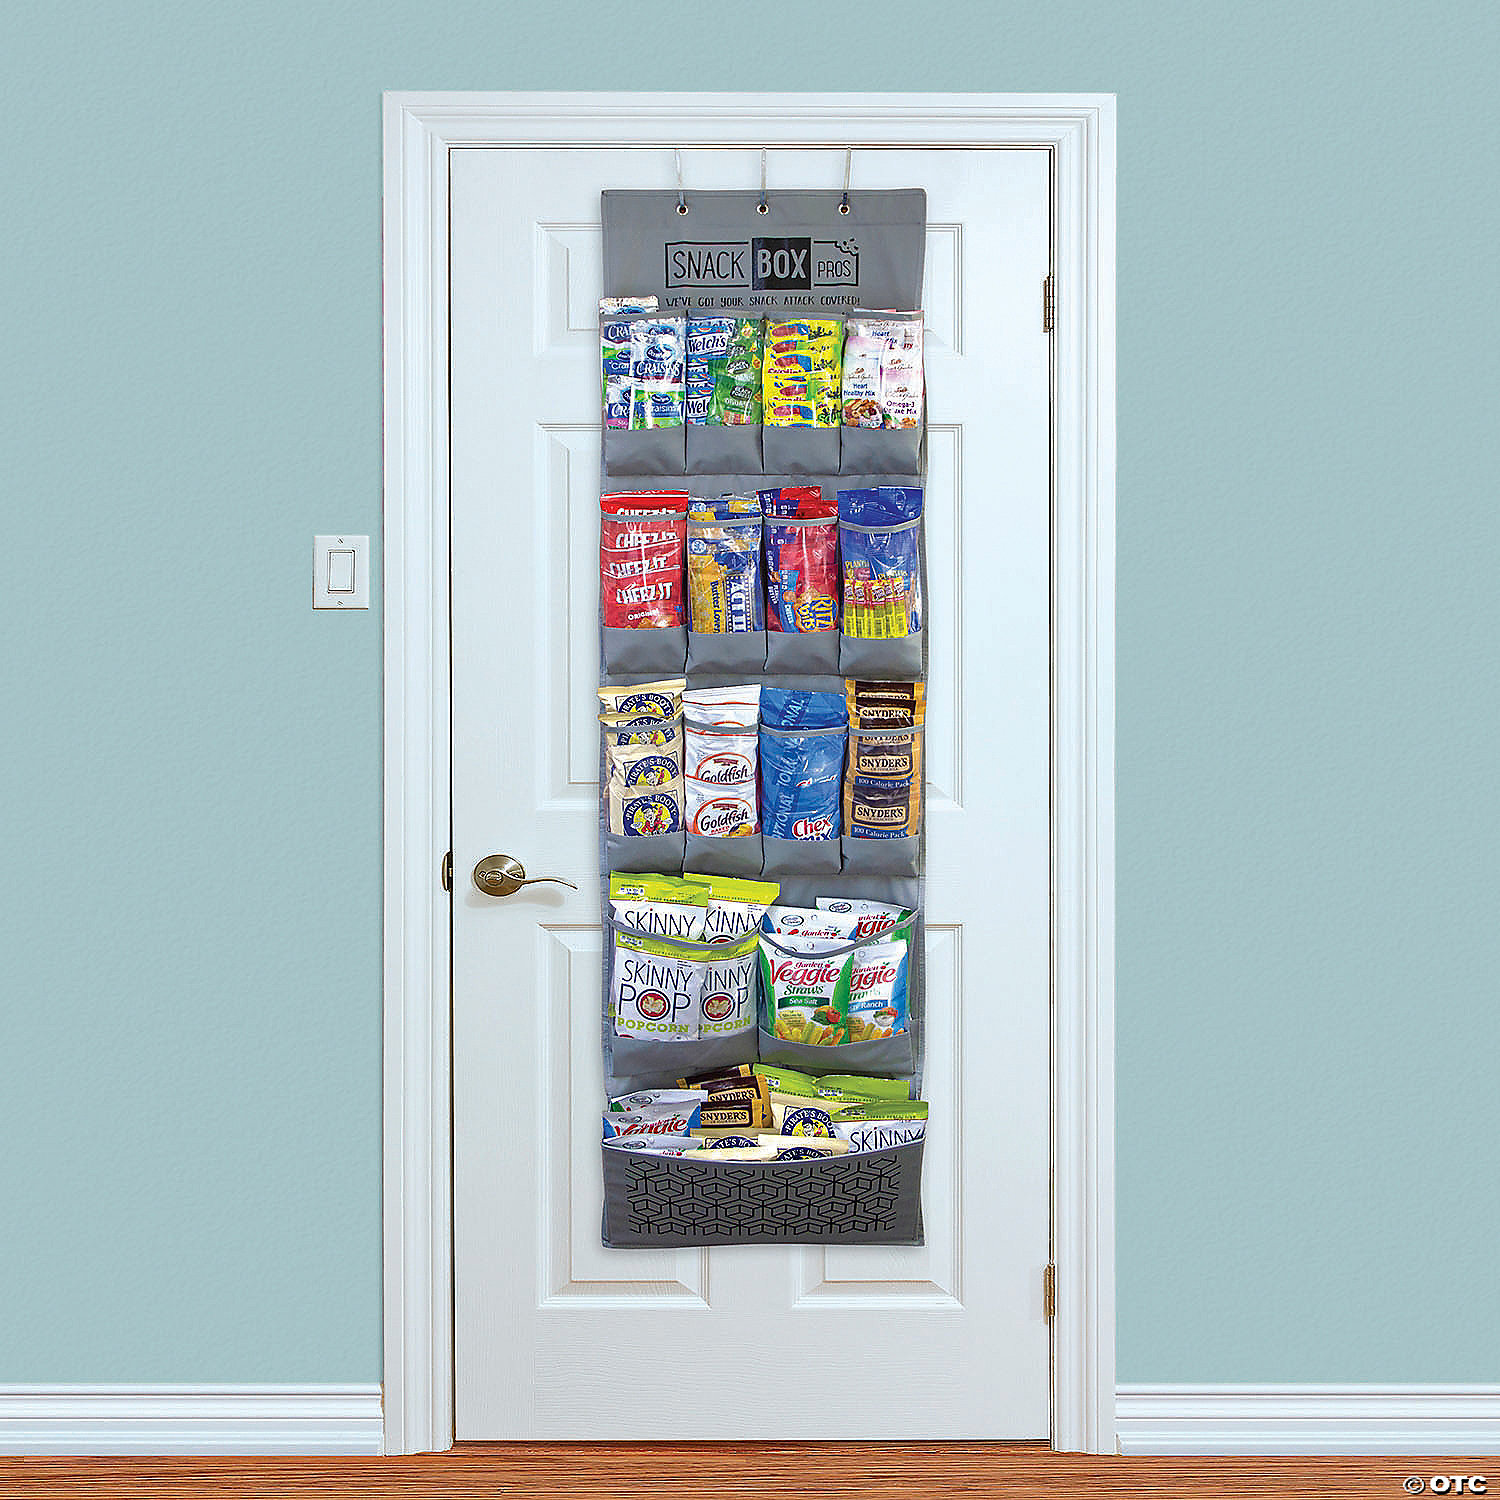 SNACK BOX PROS Breakroom Healthy Snacks Over The Door Organizer